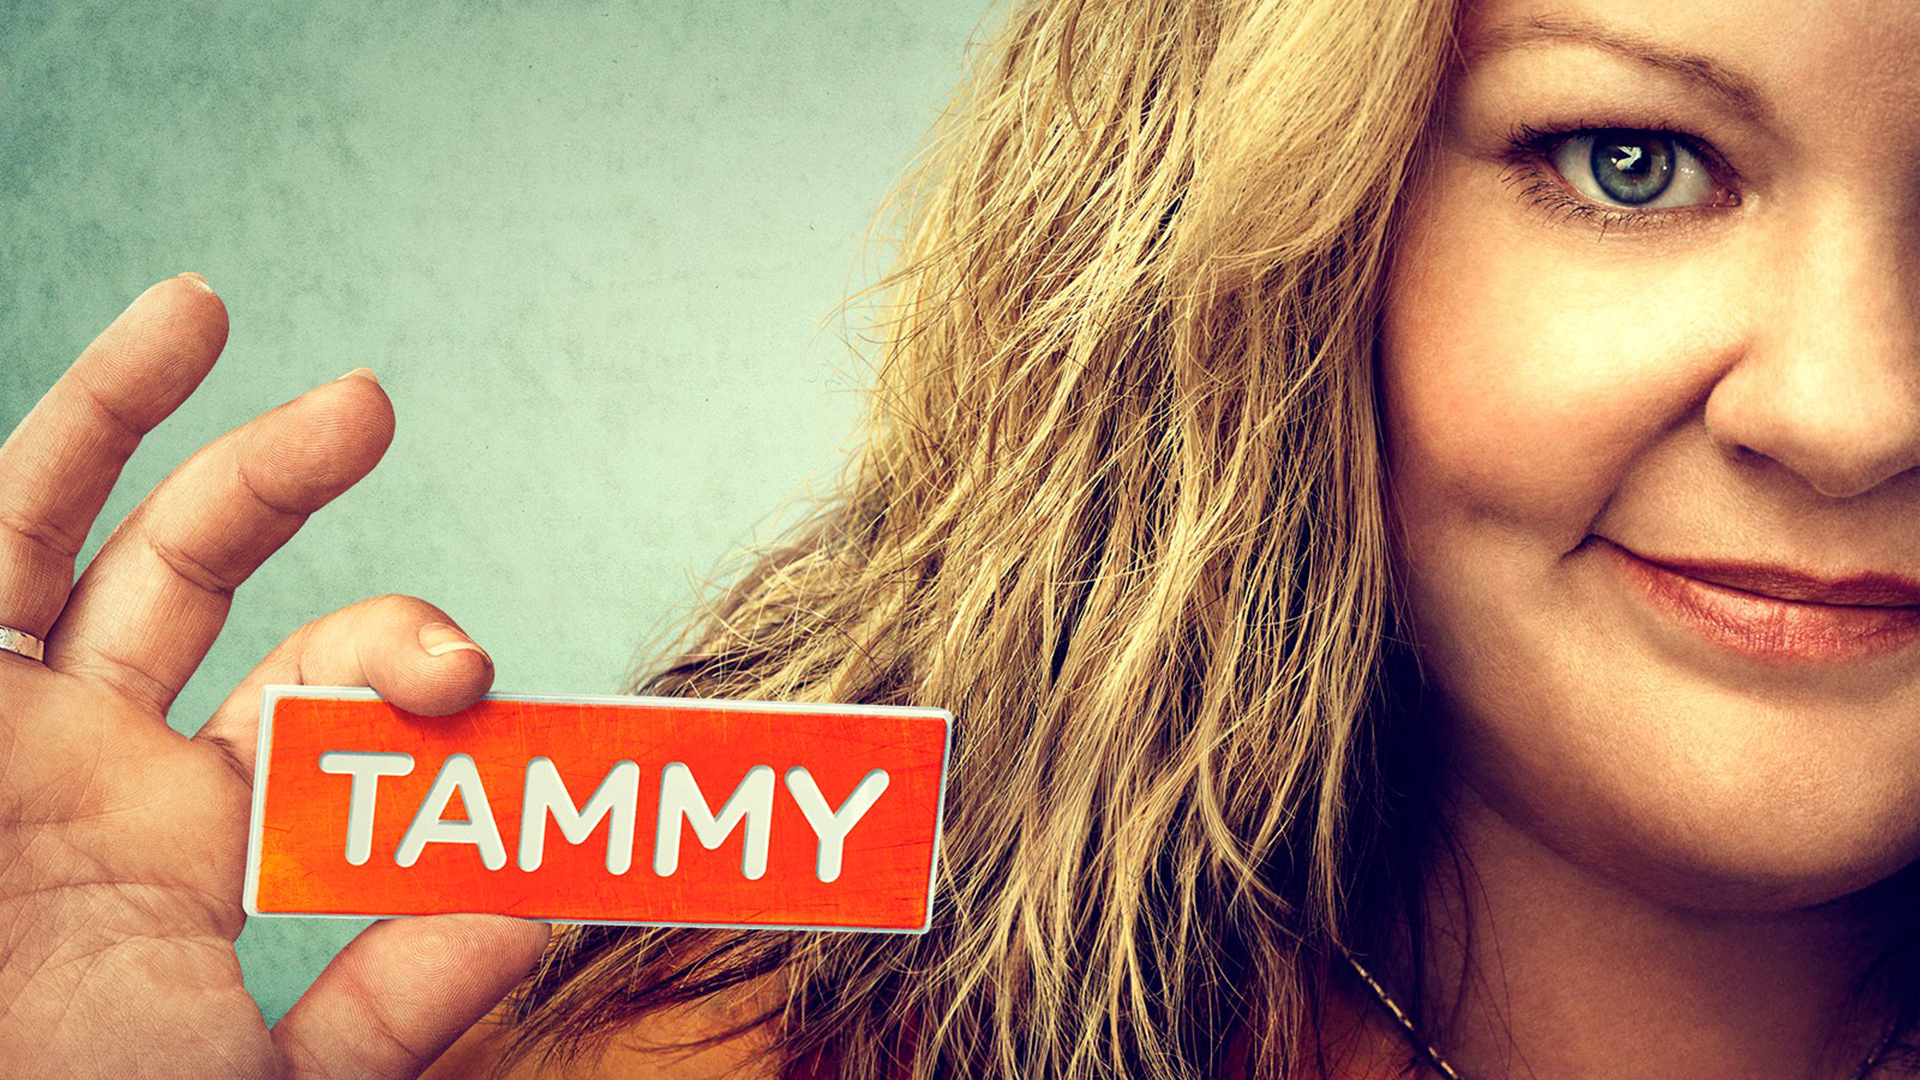 Tammy Full Movie Free